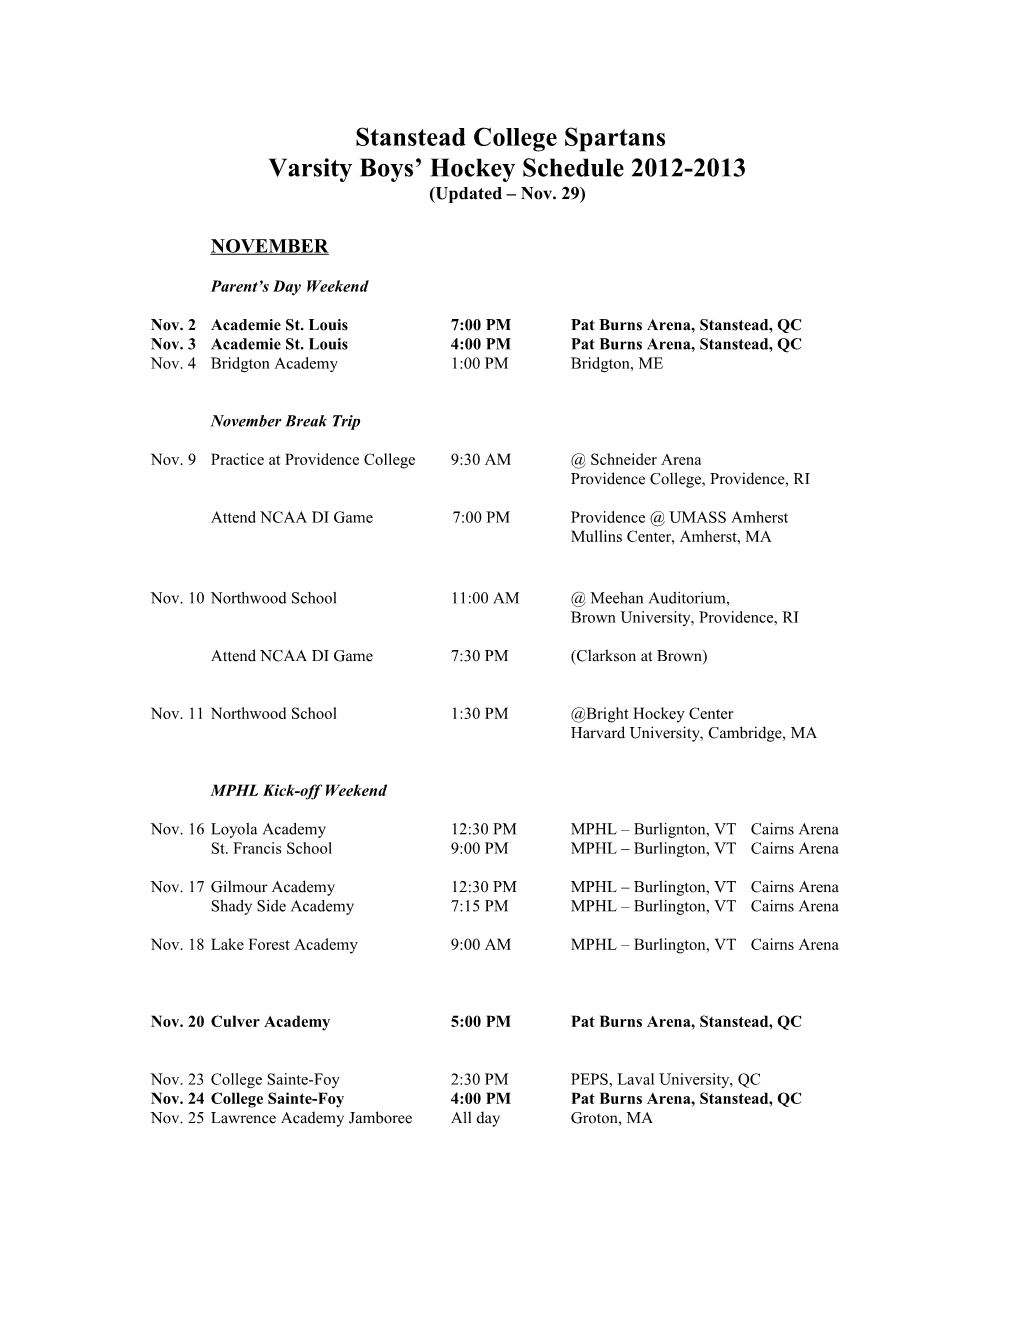 Stanstead College Spartans Schedule 2009-2010